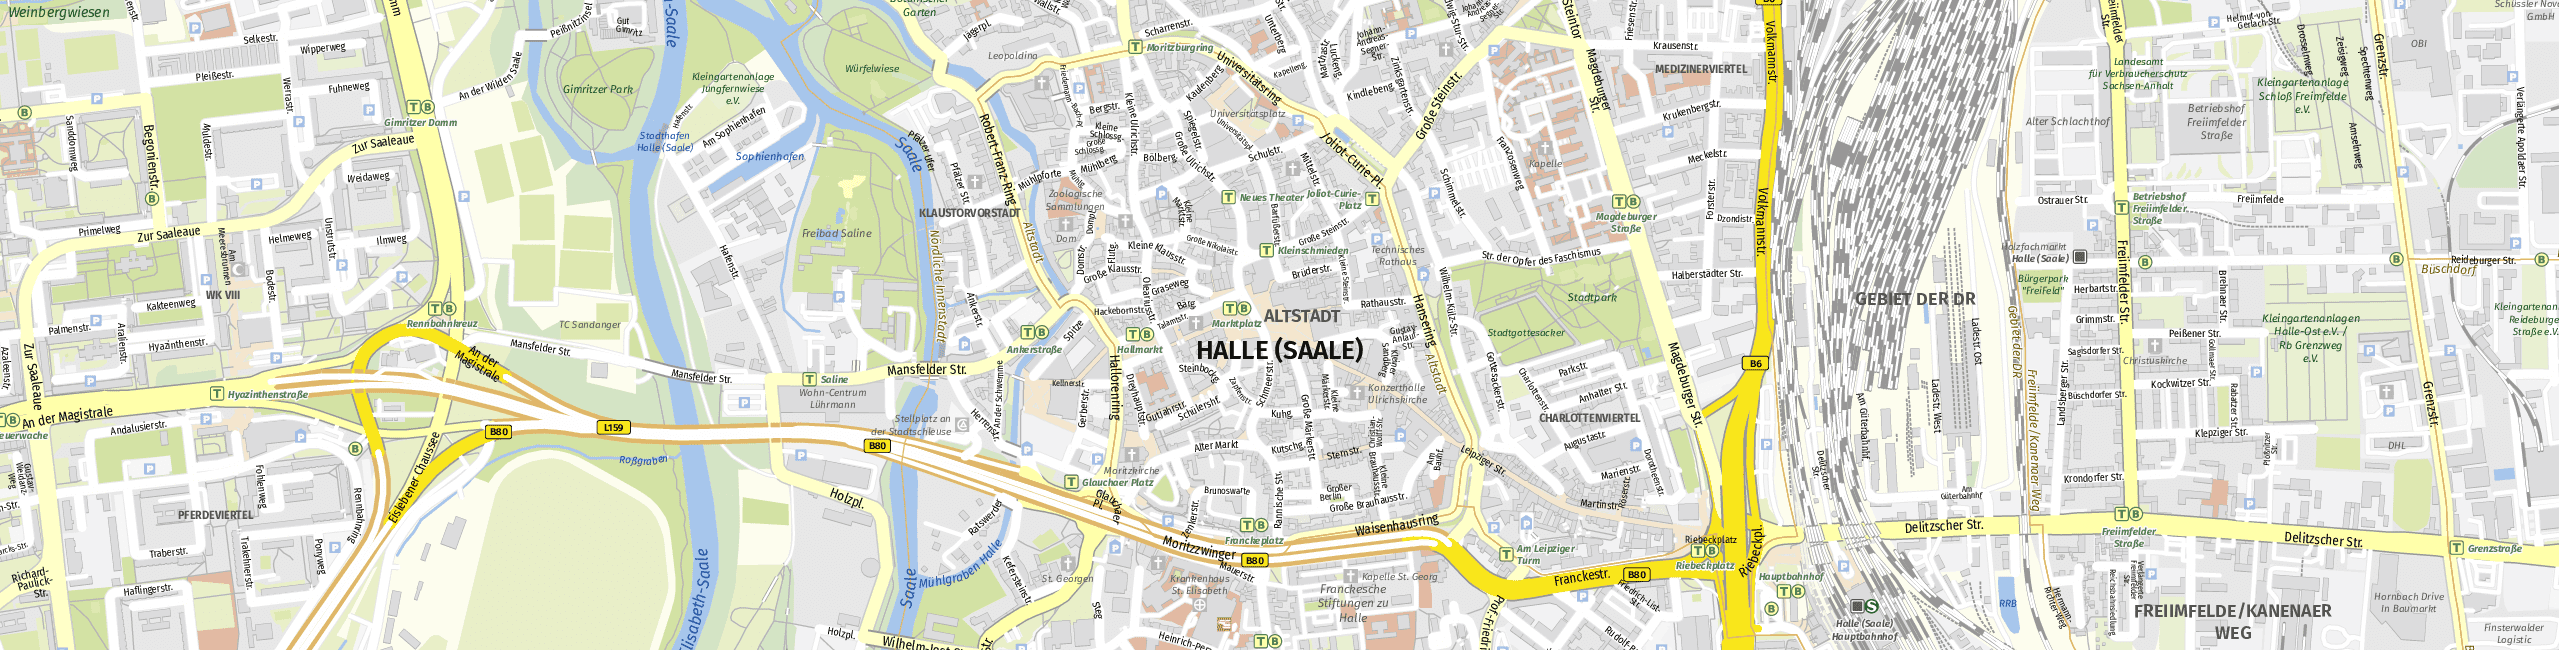 Stadtplan Halle (Saale) zum Downloaden.